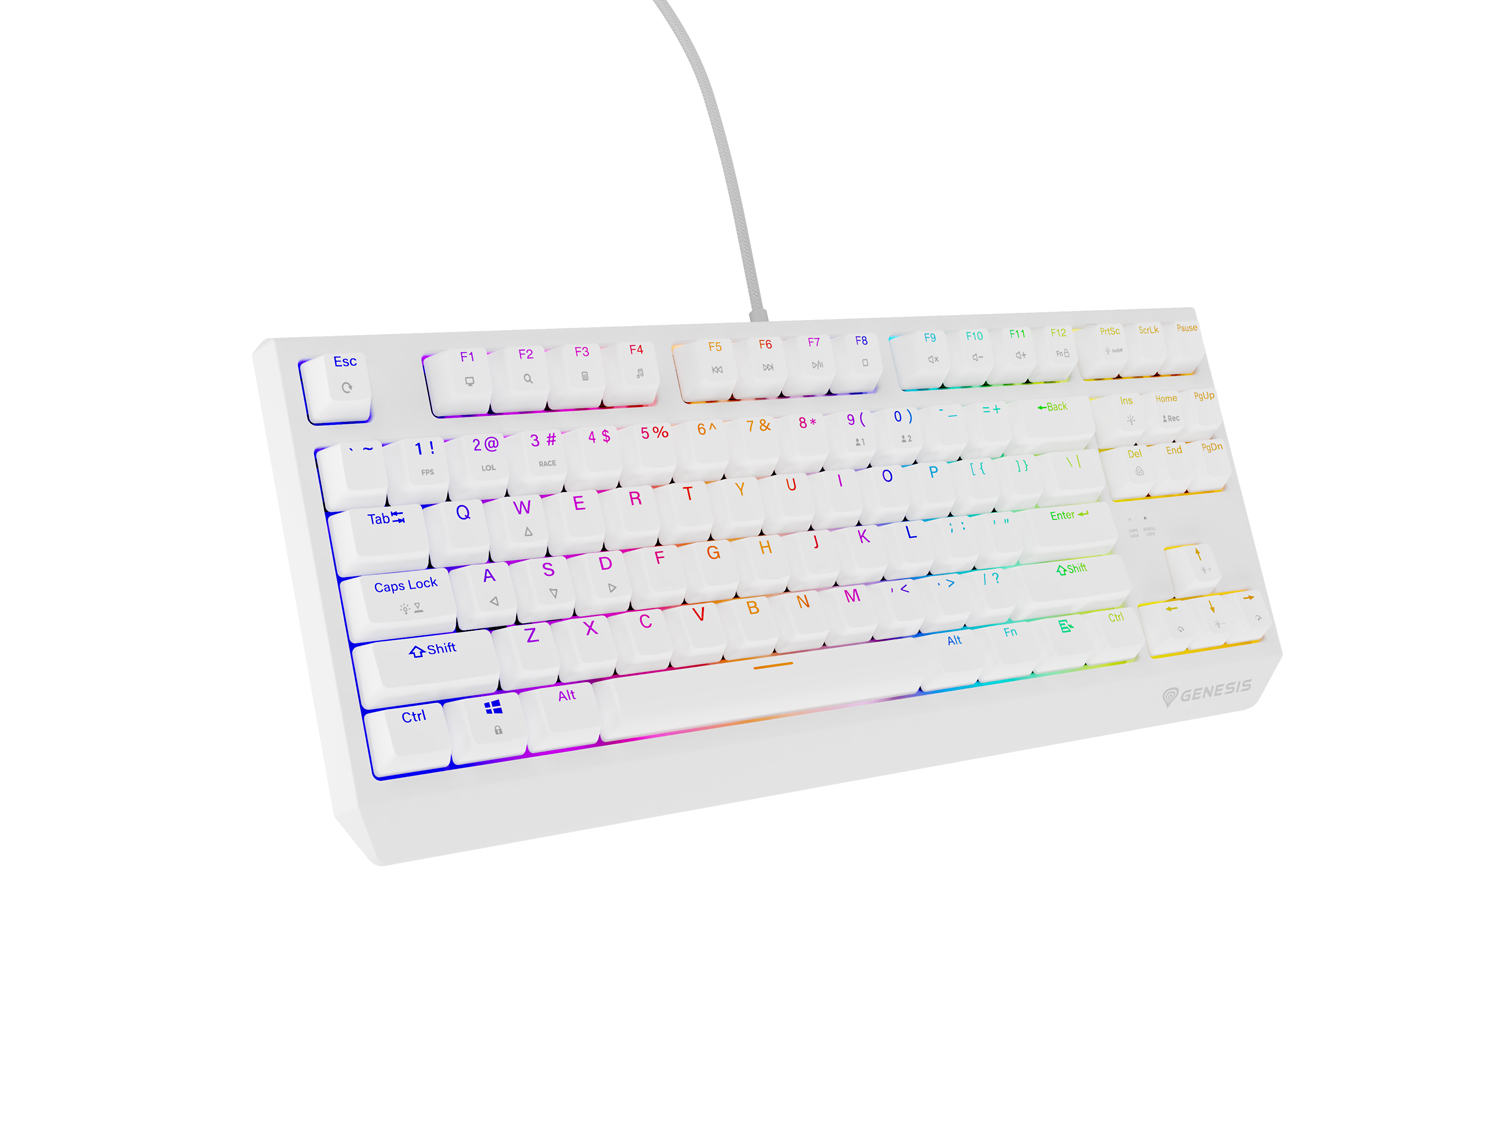 Genesis herní klávesnice THOR 230/ TKL/ RGB/ Outemu Red/ Drátová USB/ US layout/ Bílá 